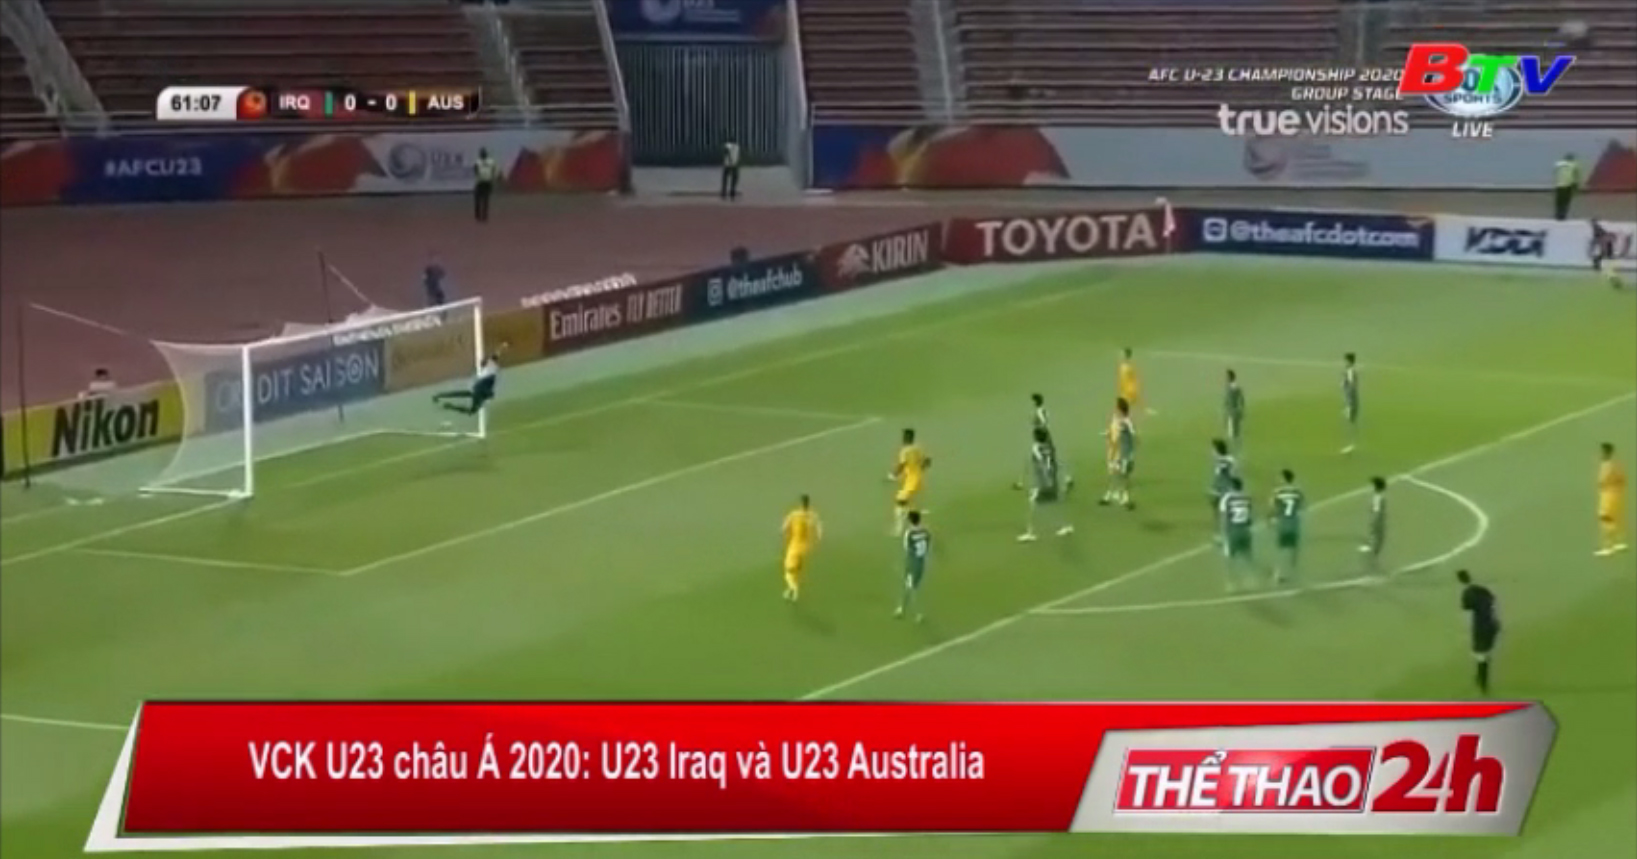 U23 Iraq cầm hòa U23 Australia trong trận mở màn VCK U23 châu Á 2020